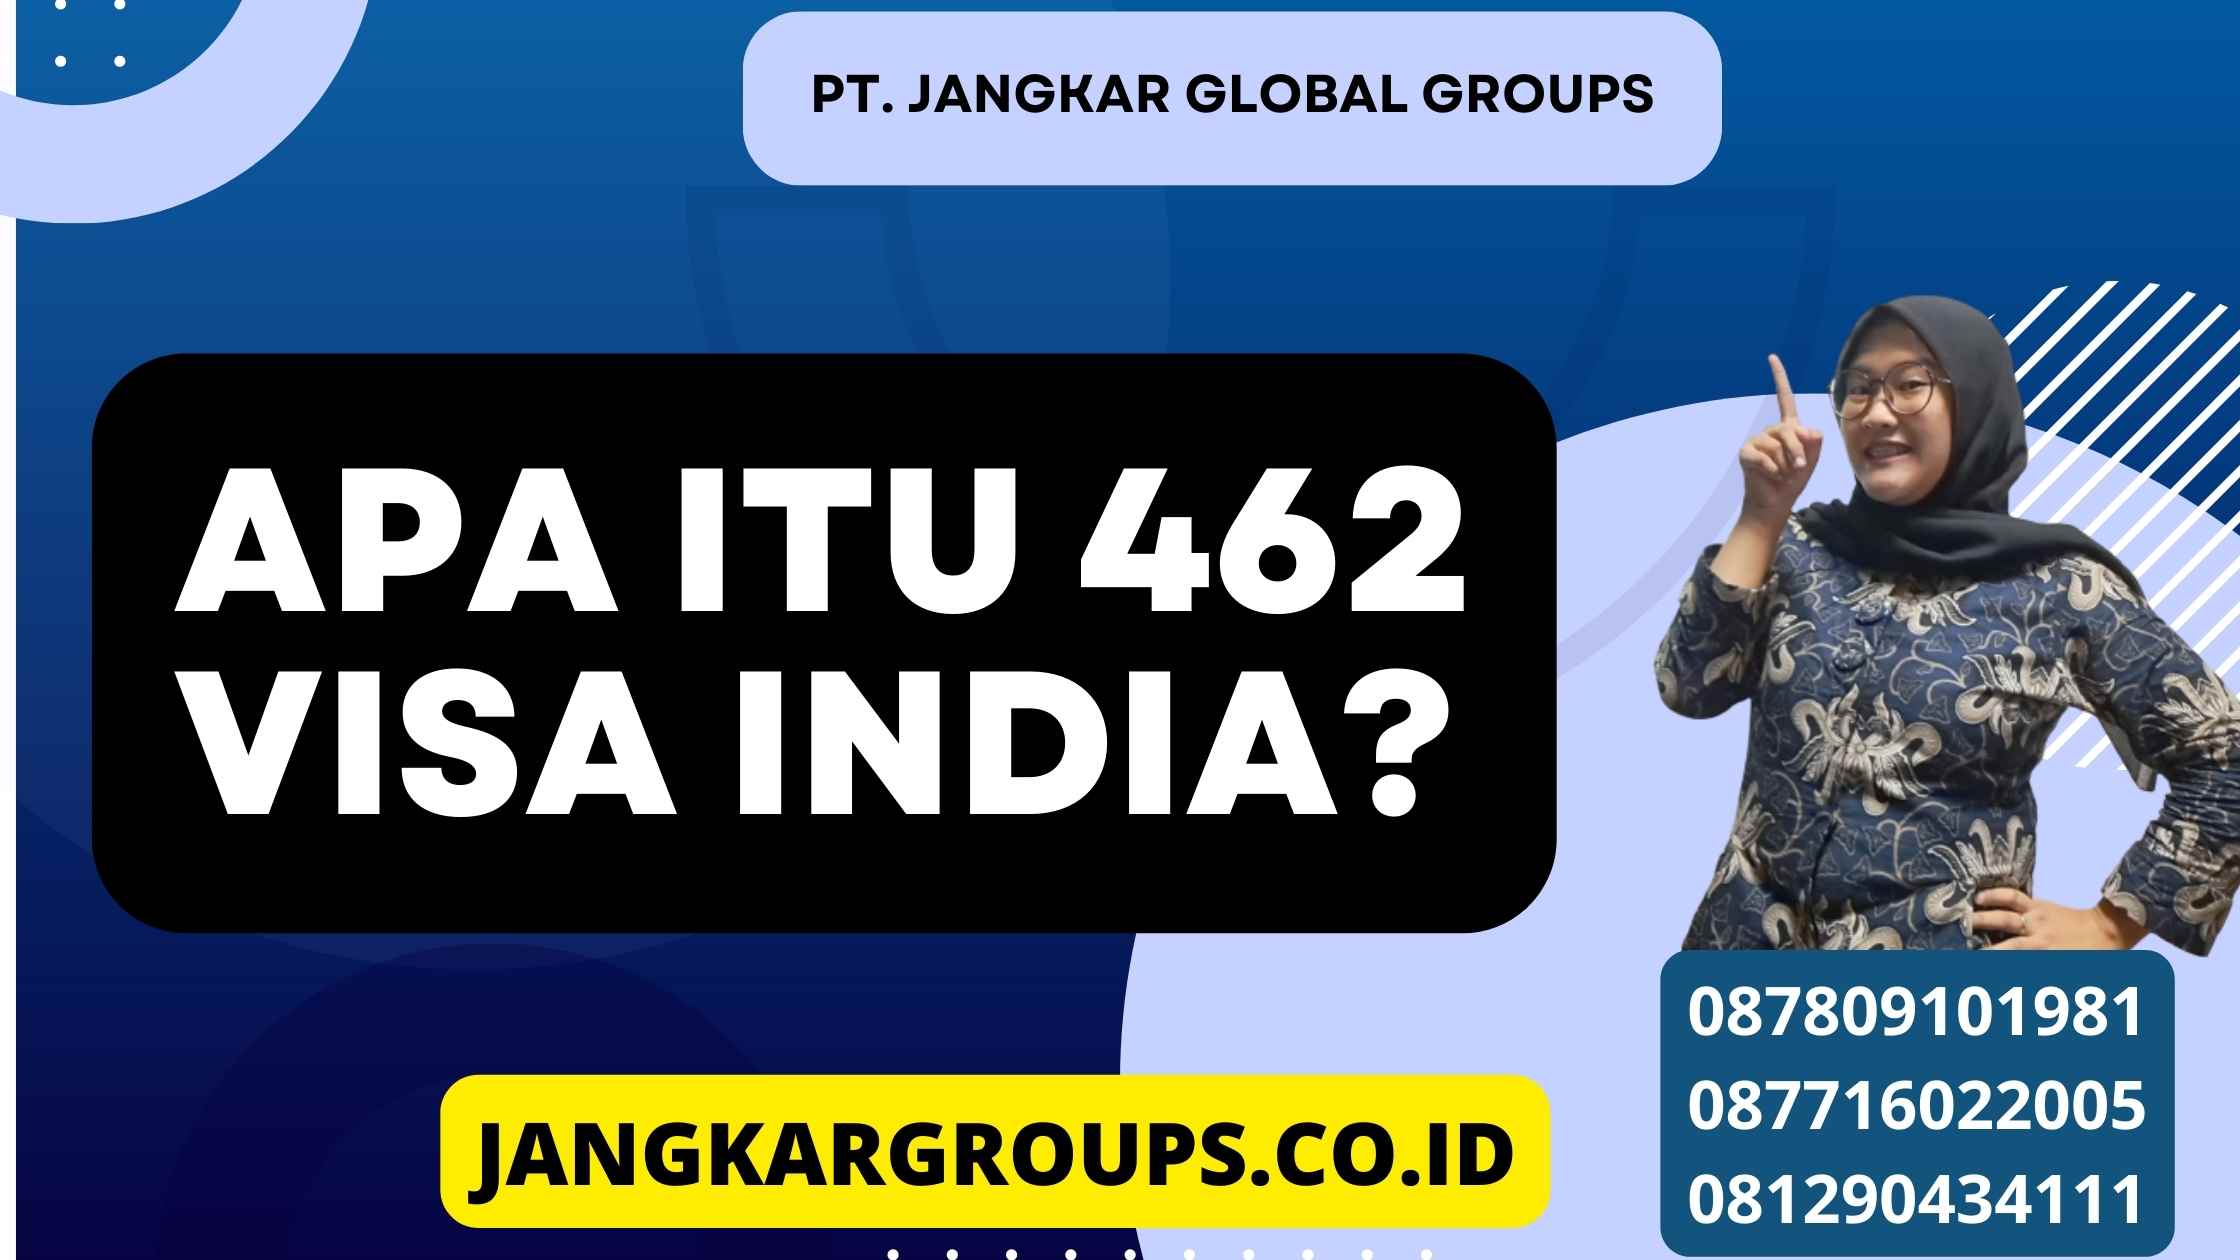 Apa itu 462 Visa India?